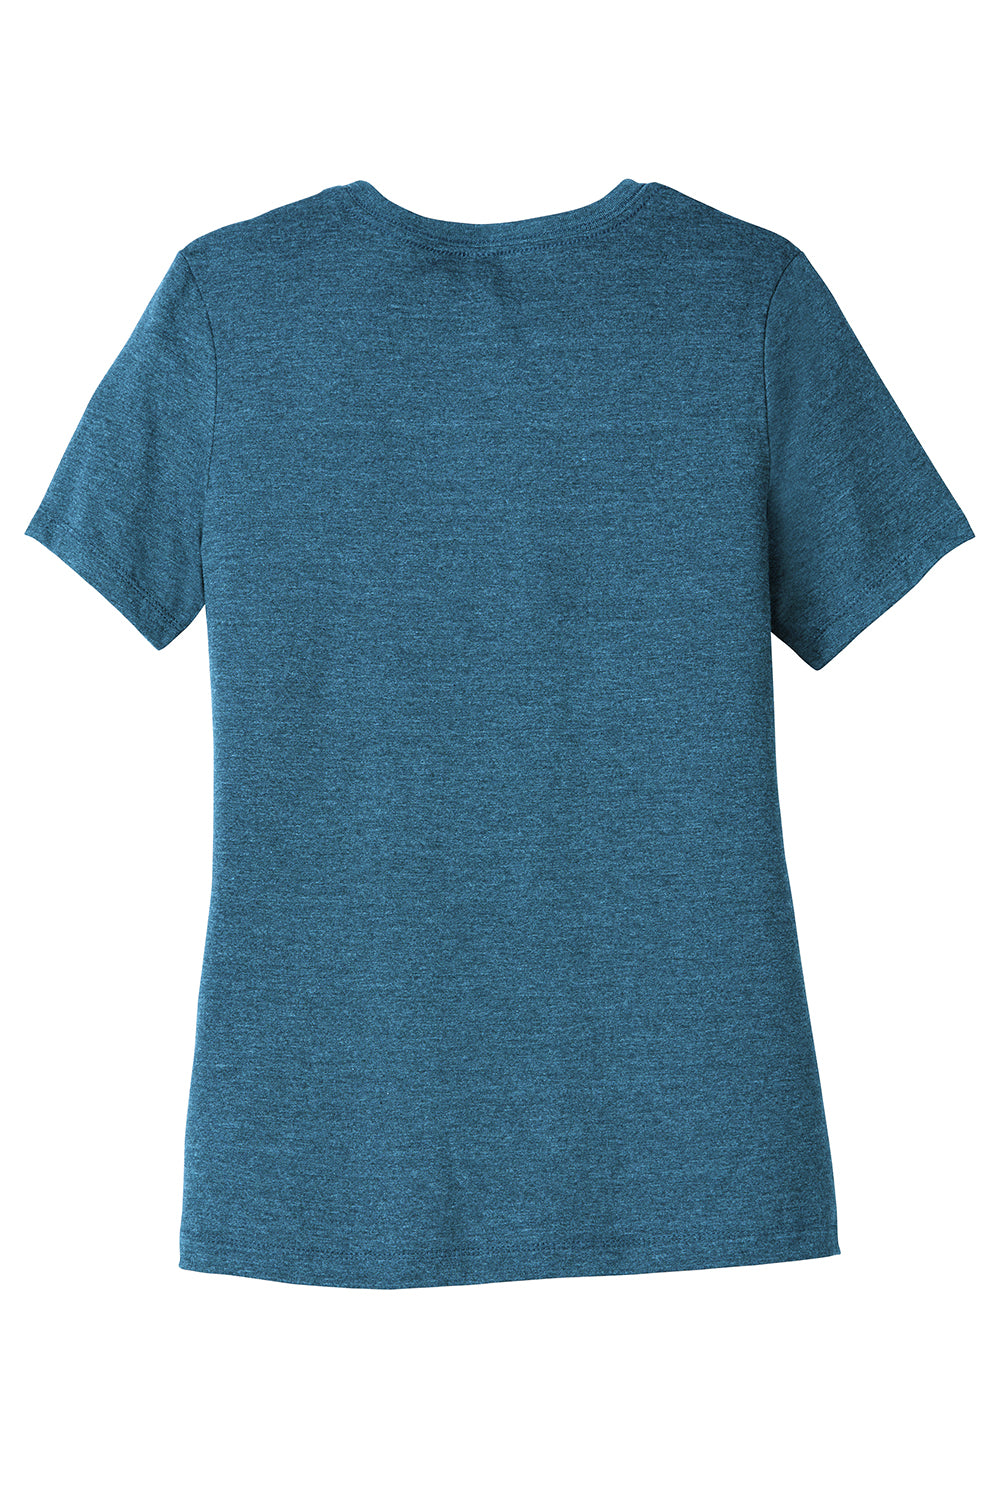 Bella + Canvas BC6400CVC/6400CVC Womens CVC Short Sleeve Crewneck T-Shirt Heather Deep Teal Blue Flat Back